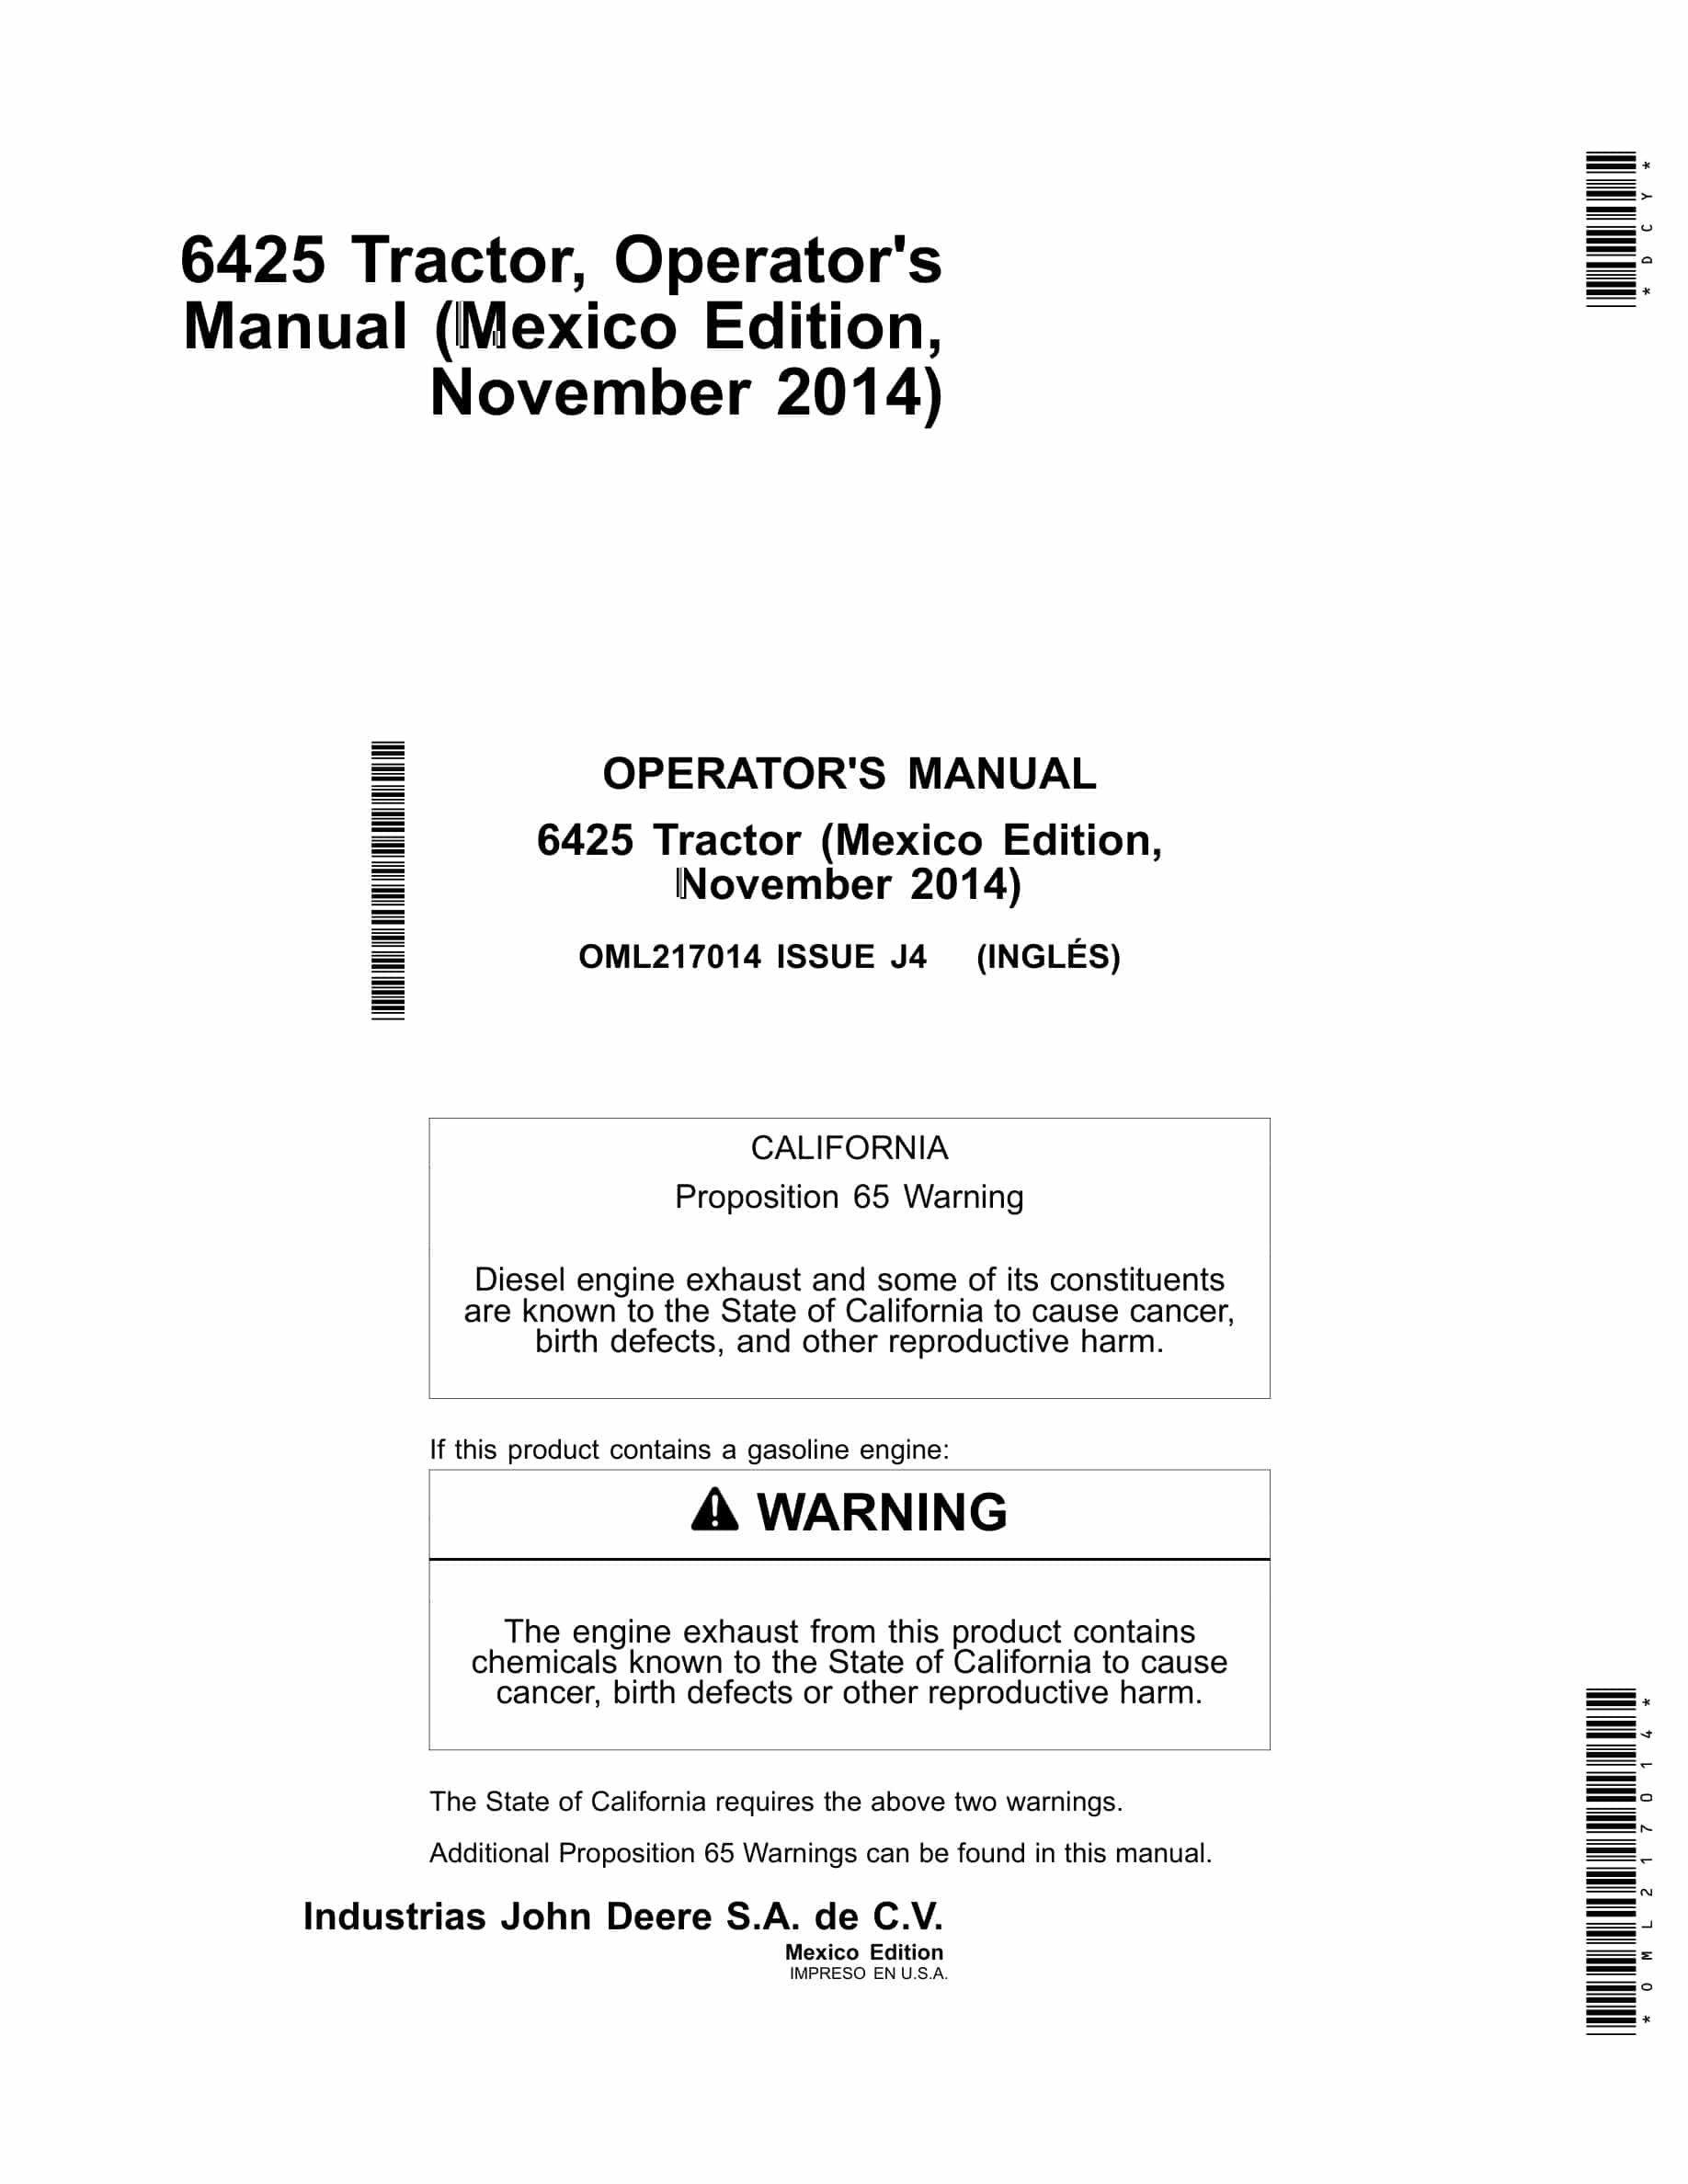 John Deere 6425 Tractors Operator Manual OML217014-1